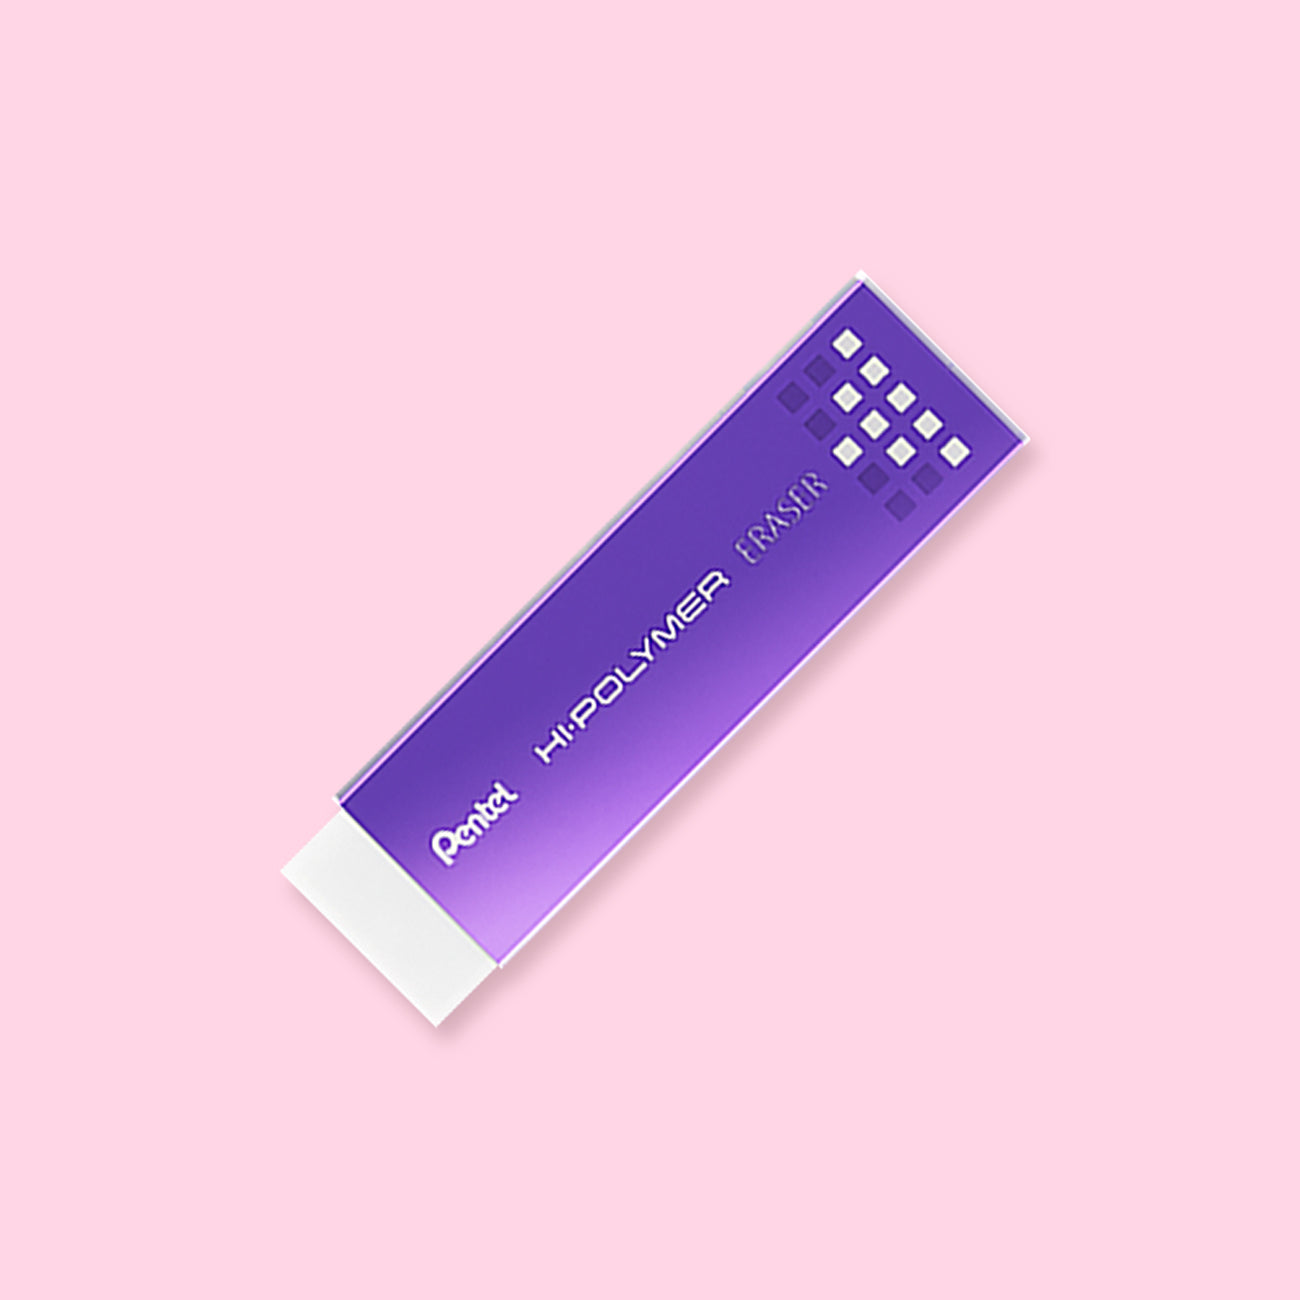 Pentel Slim Hi-Polymer Eraser - Metallic Purple